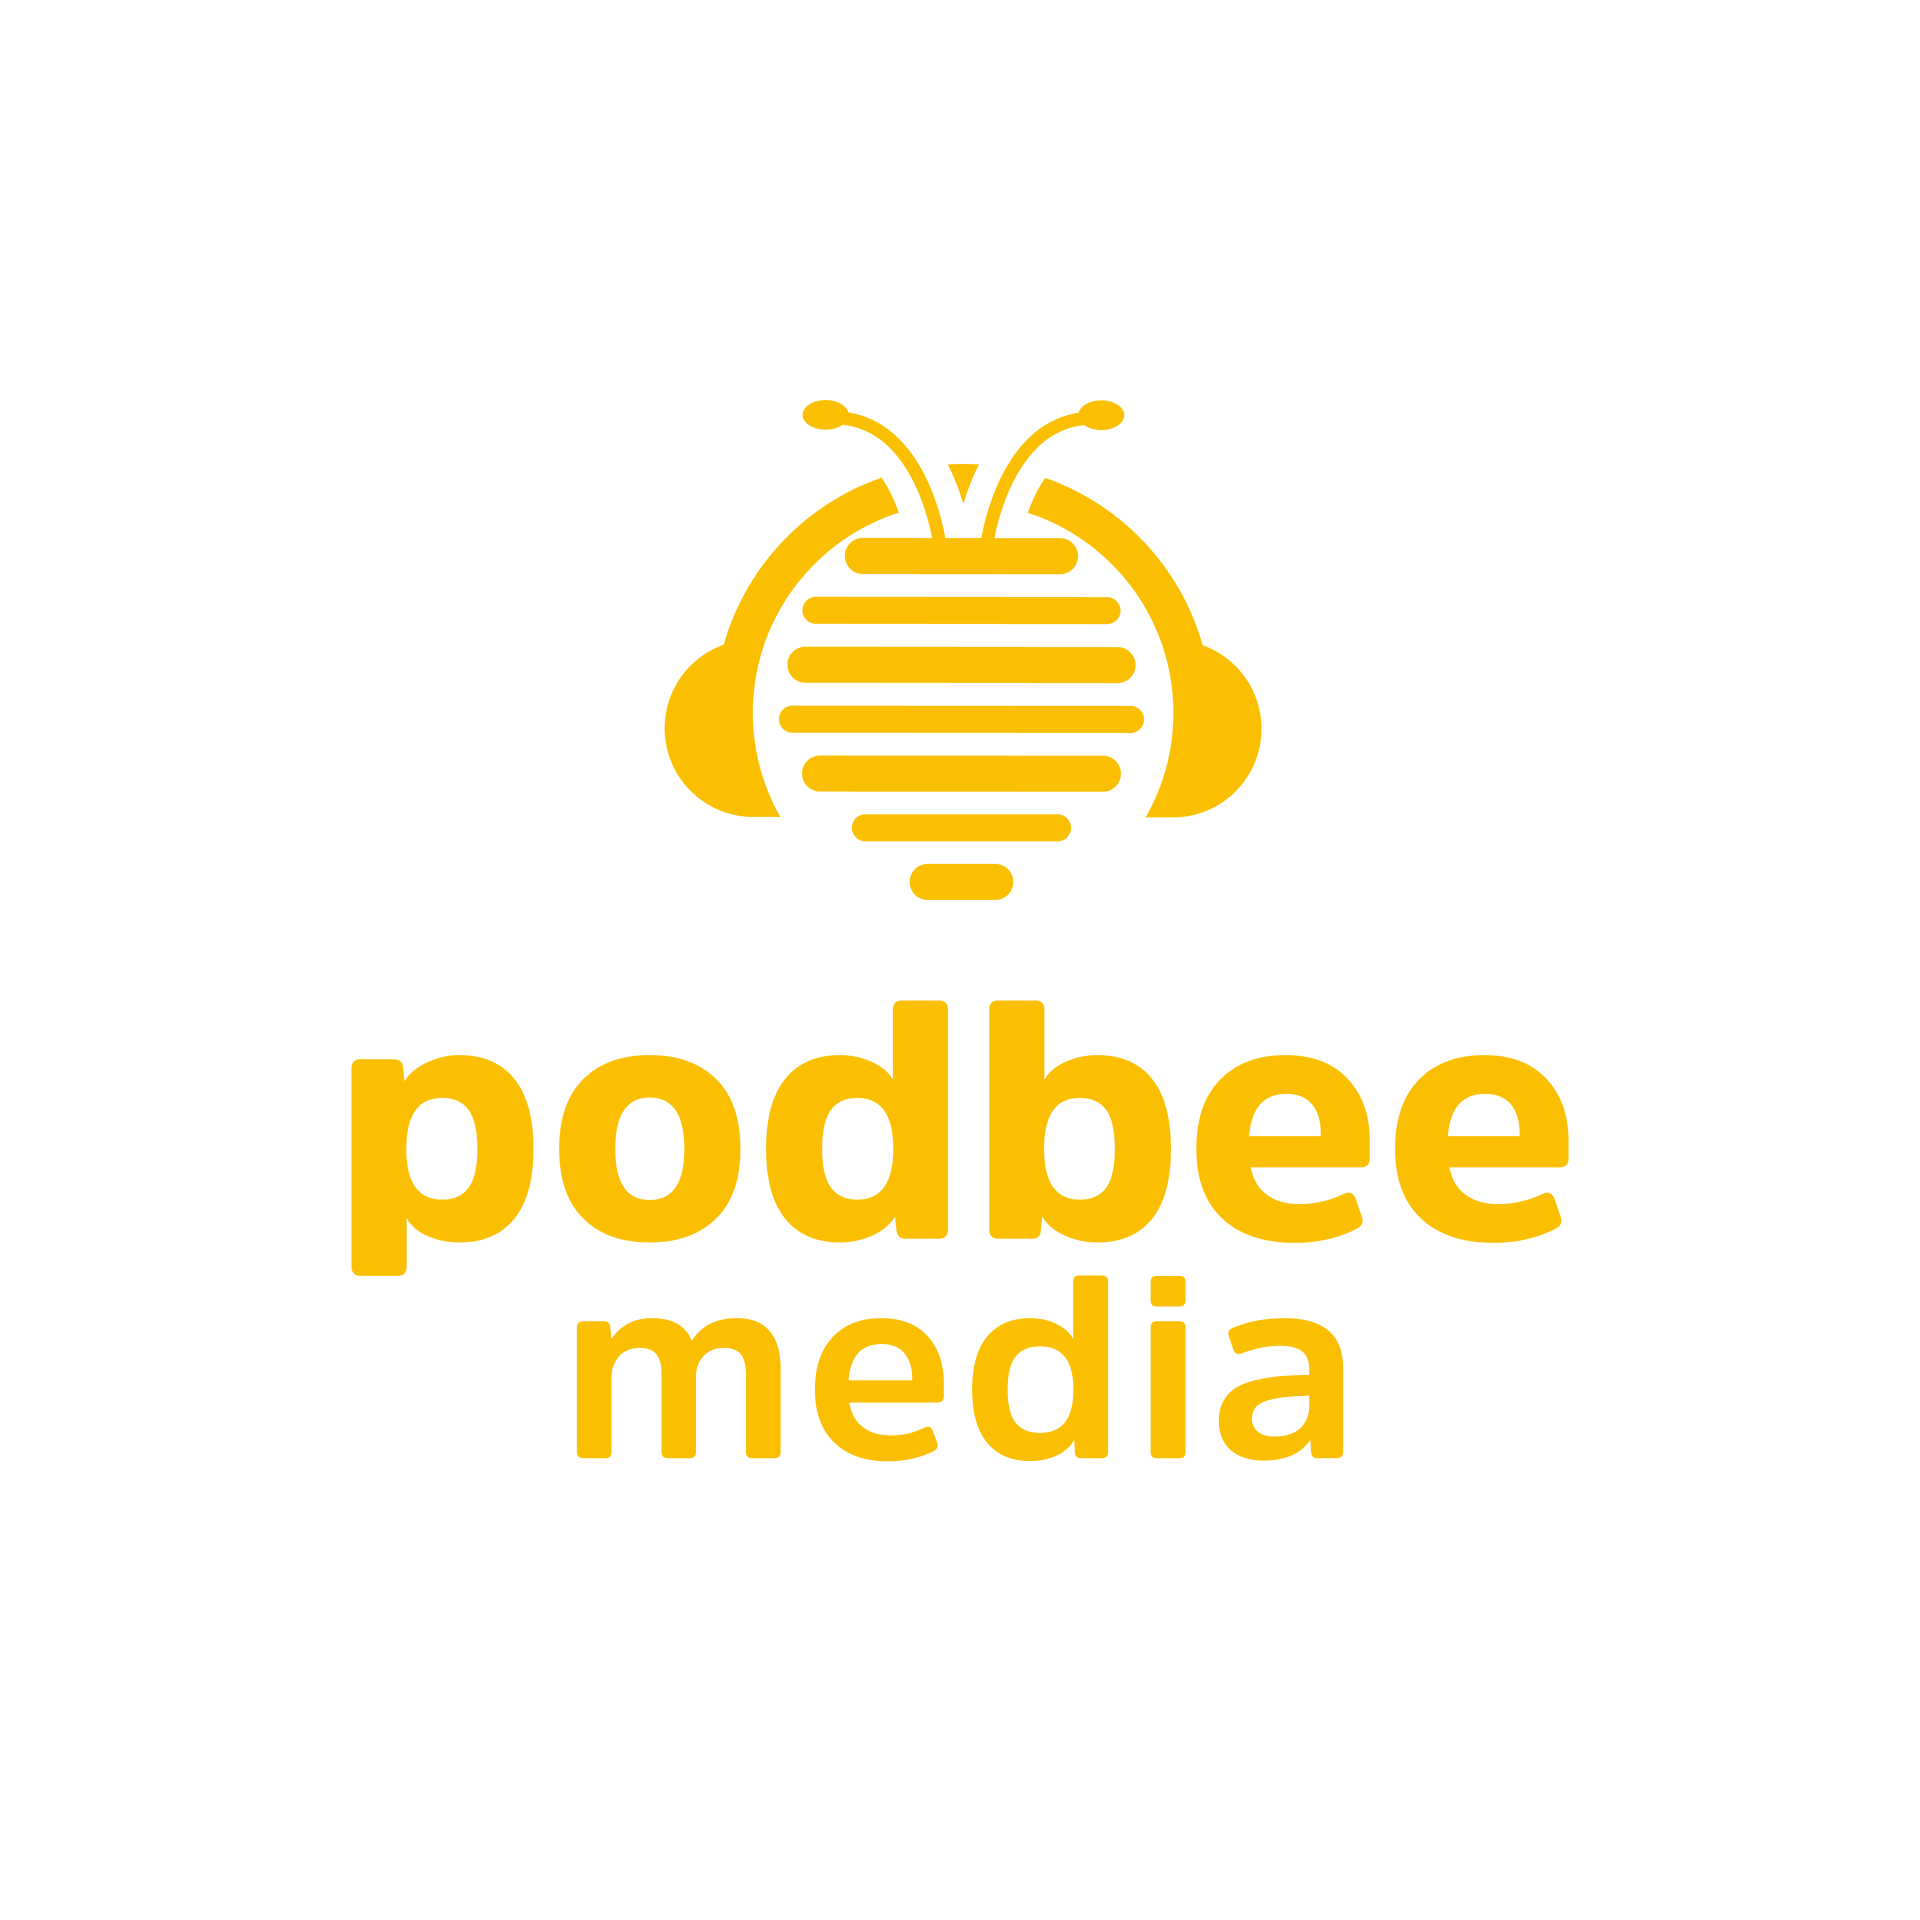 Podcast Yapım Şirketi “Podbee Media” Köprü Yatırım Turunu 3.5 Milyon Dolar Değerleme ile Tamamladı